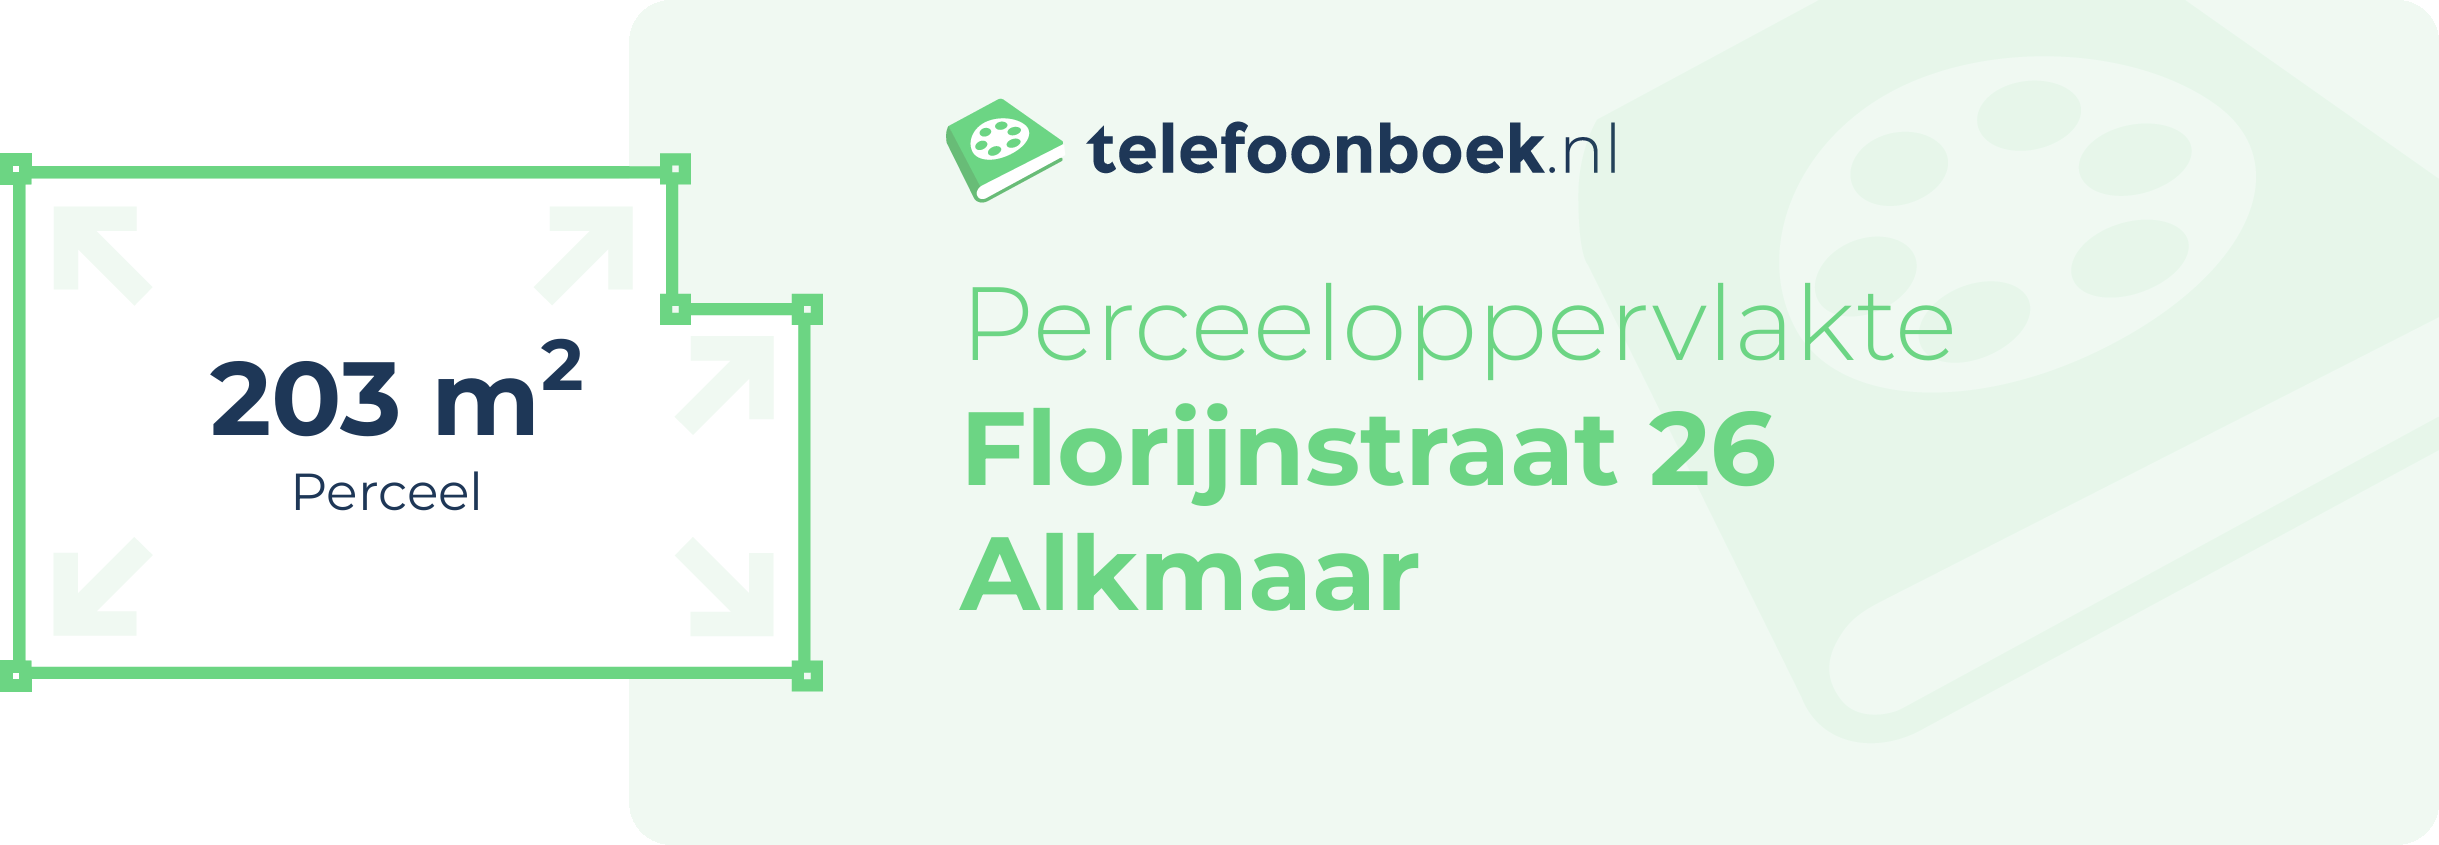 Perceeloppervlakte Florijnstraat 26 Alkmaar